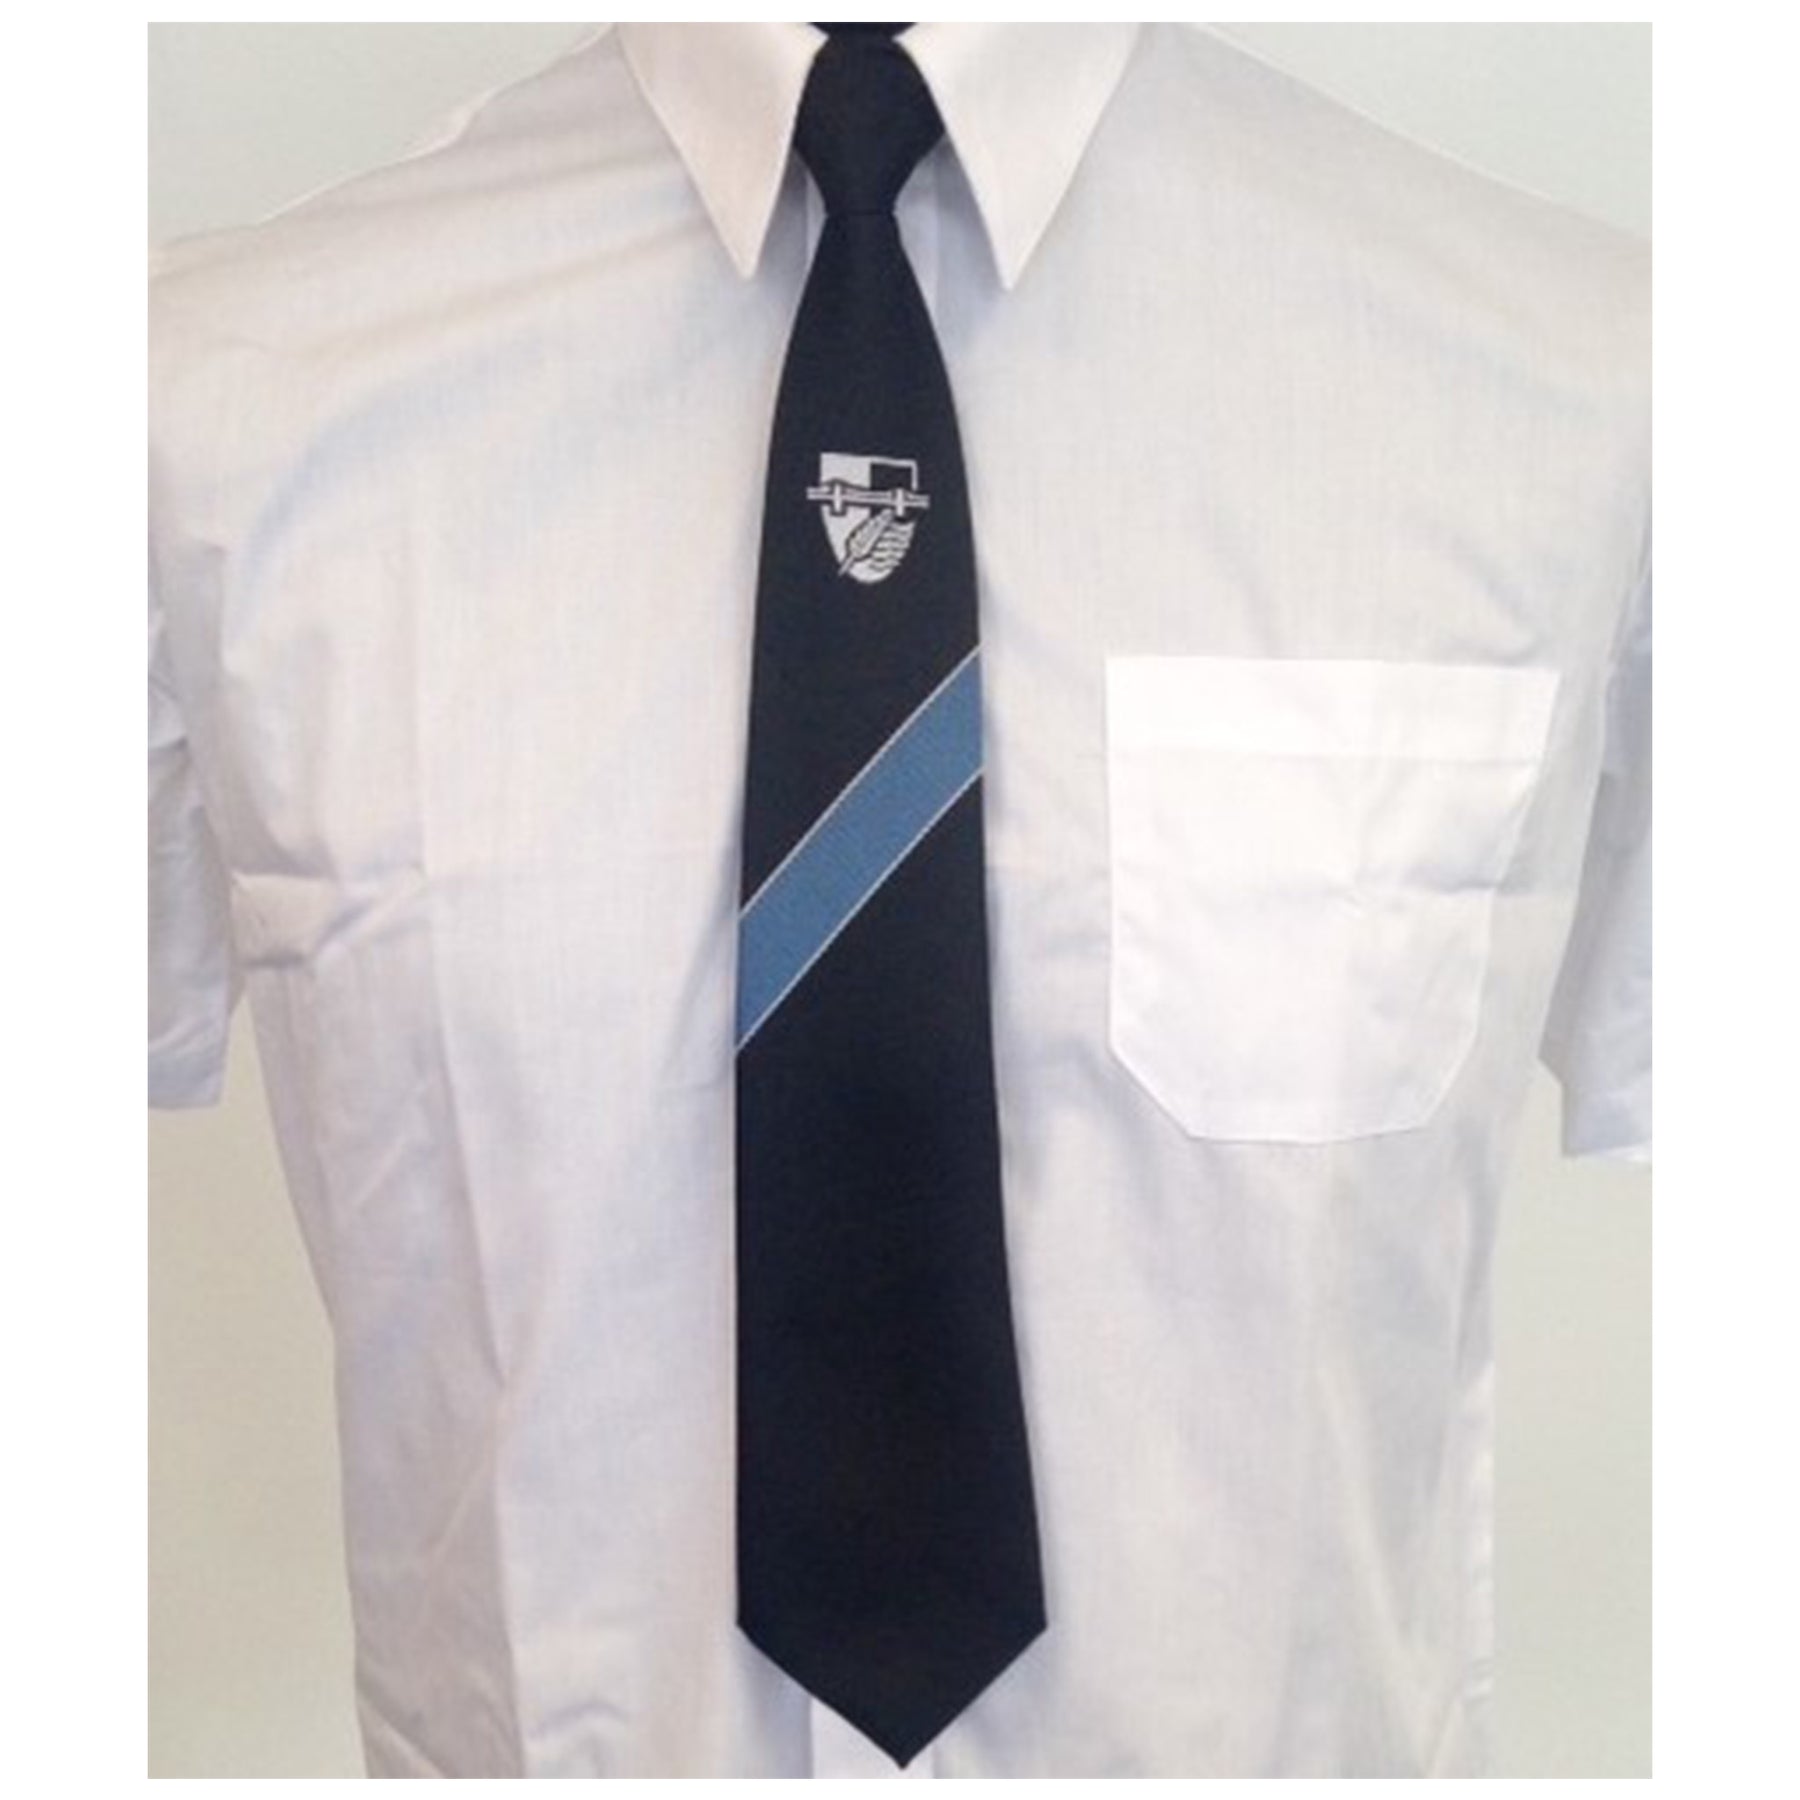 Great Marlow School Tie Blue/Hawks